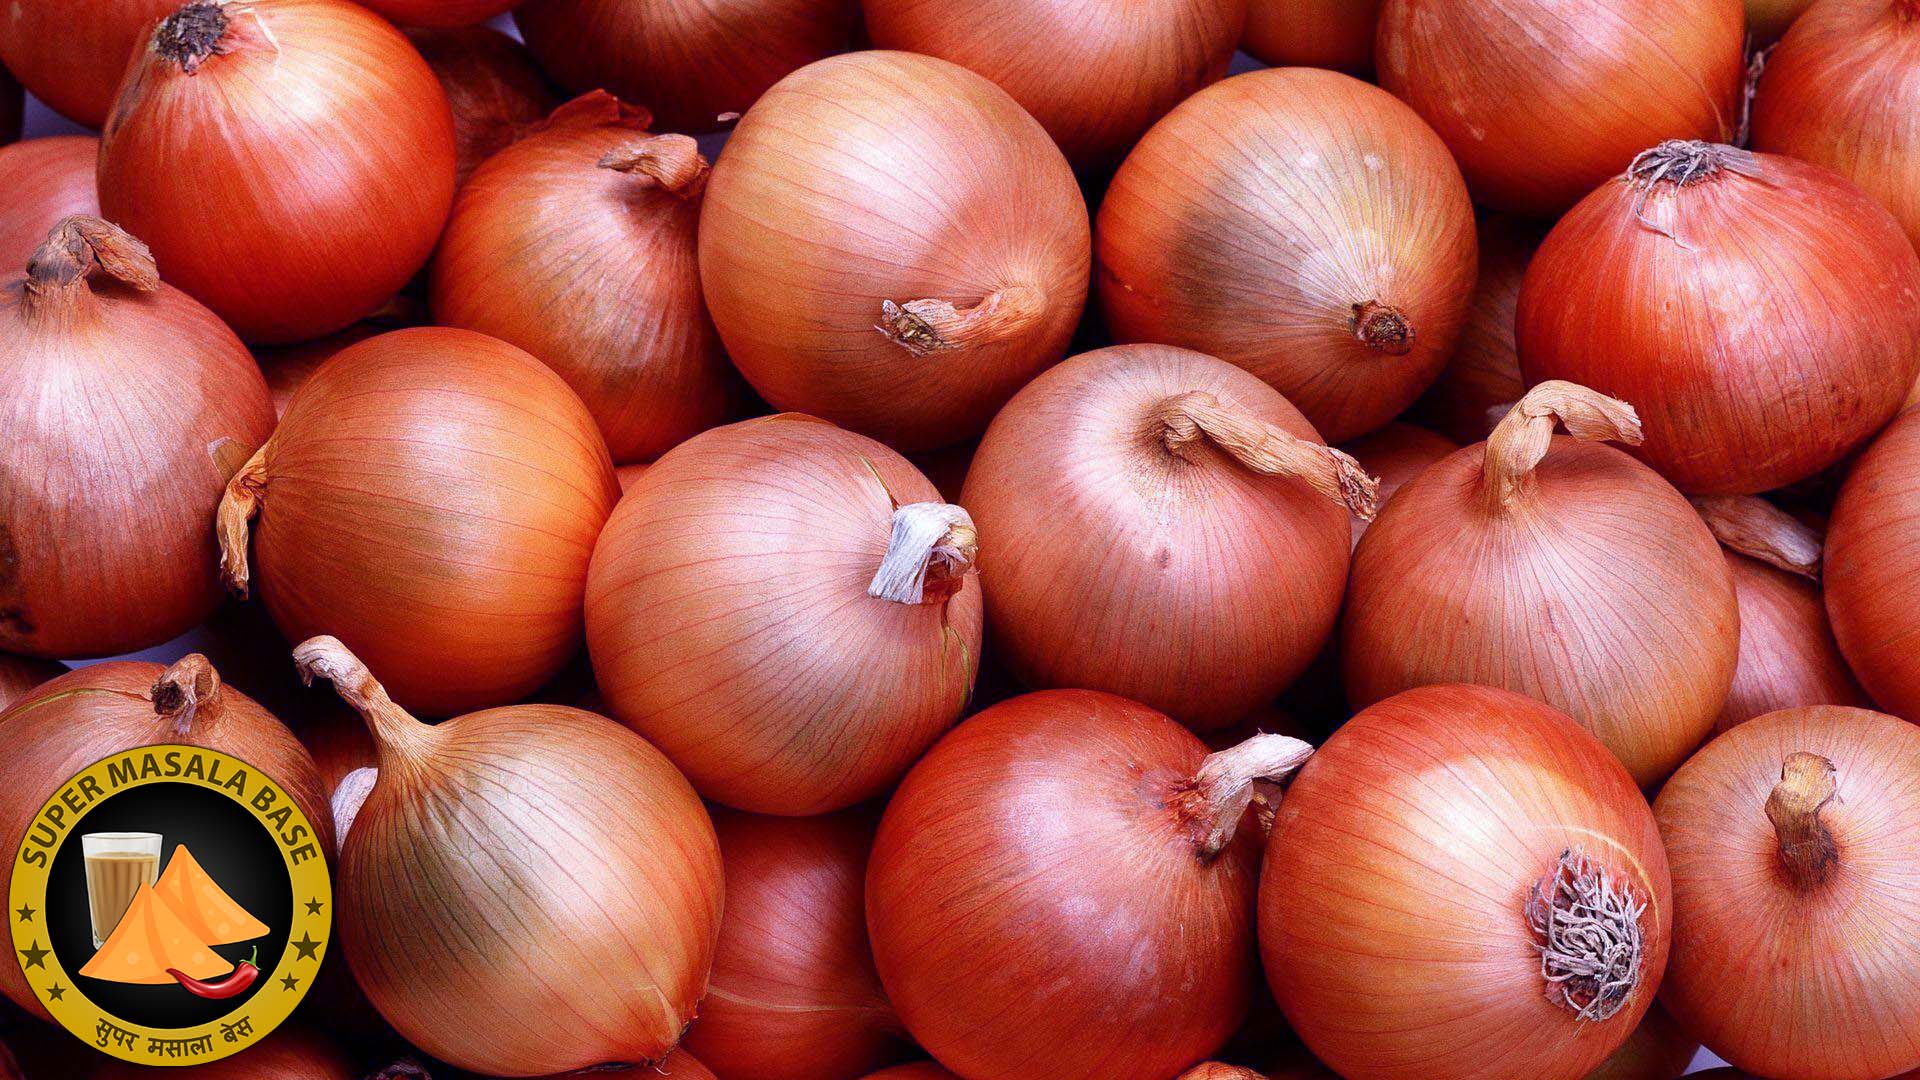 pyaaj pyaz red onions lot